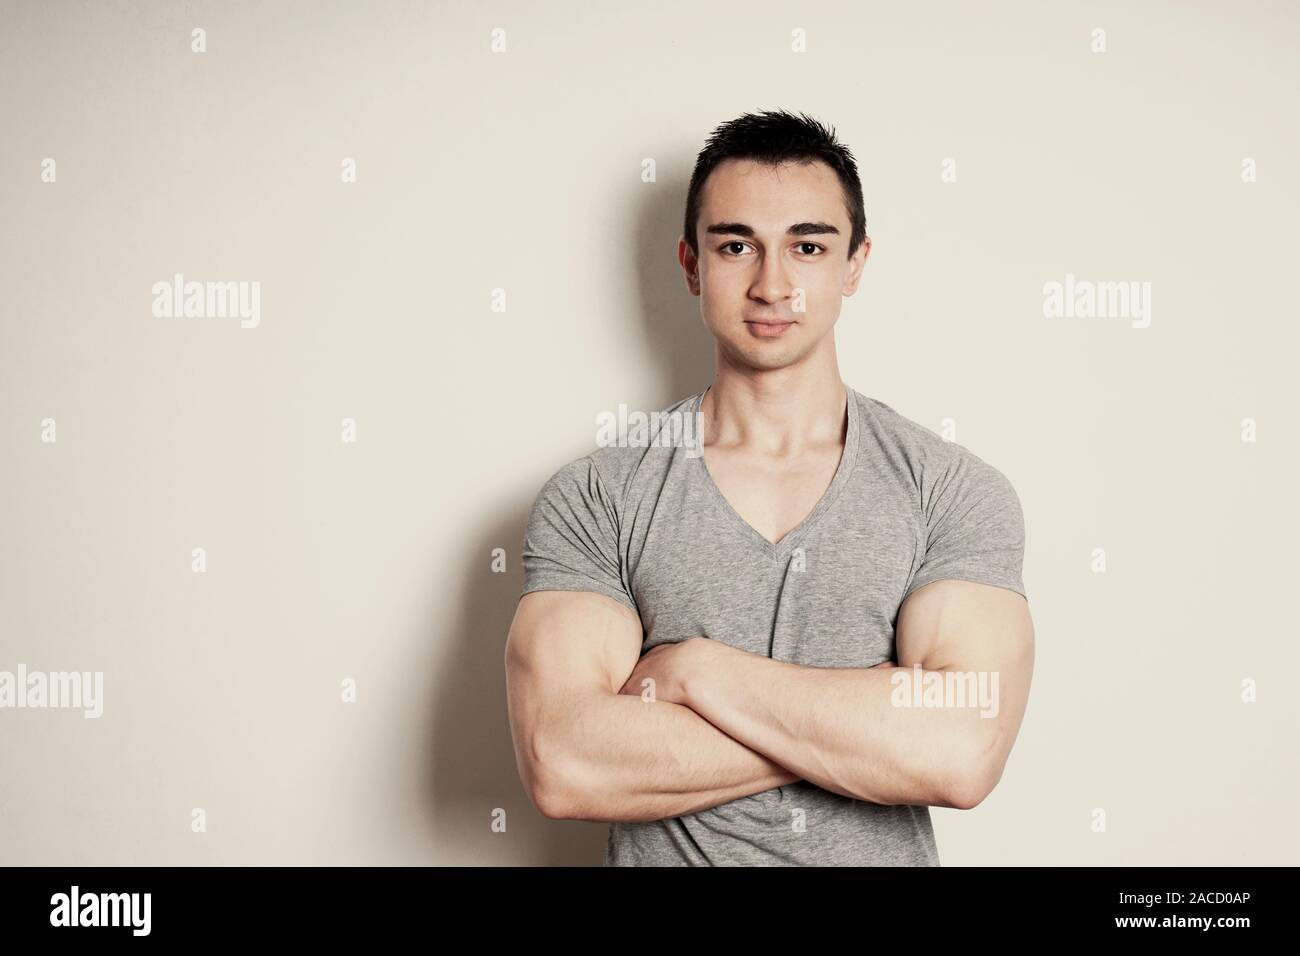 Muskulösen jungen Mann mit verschränkten Armen stehend gegen Wand mit kopieren. vintage Filter Effekt. Stockfoto